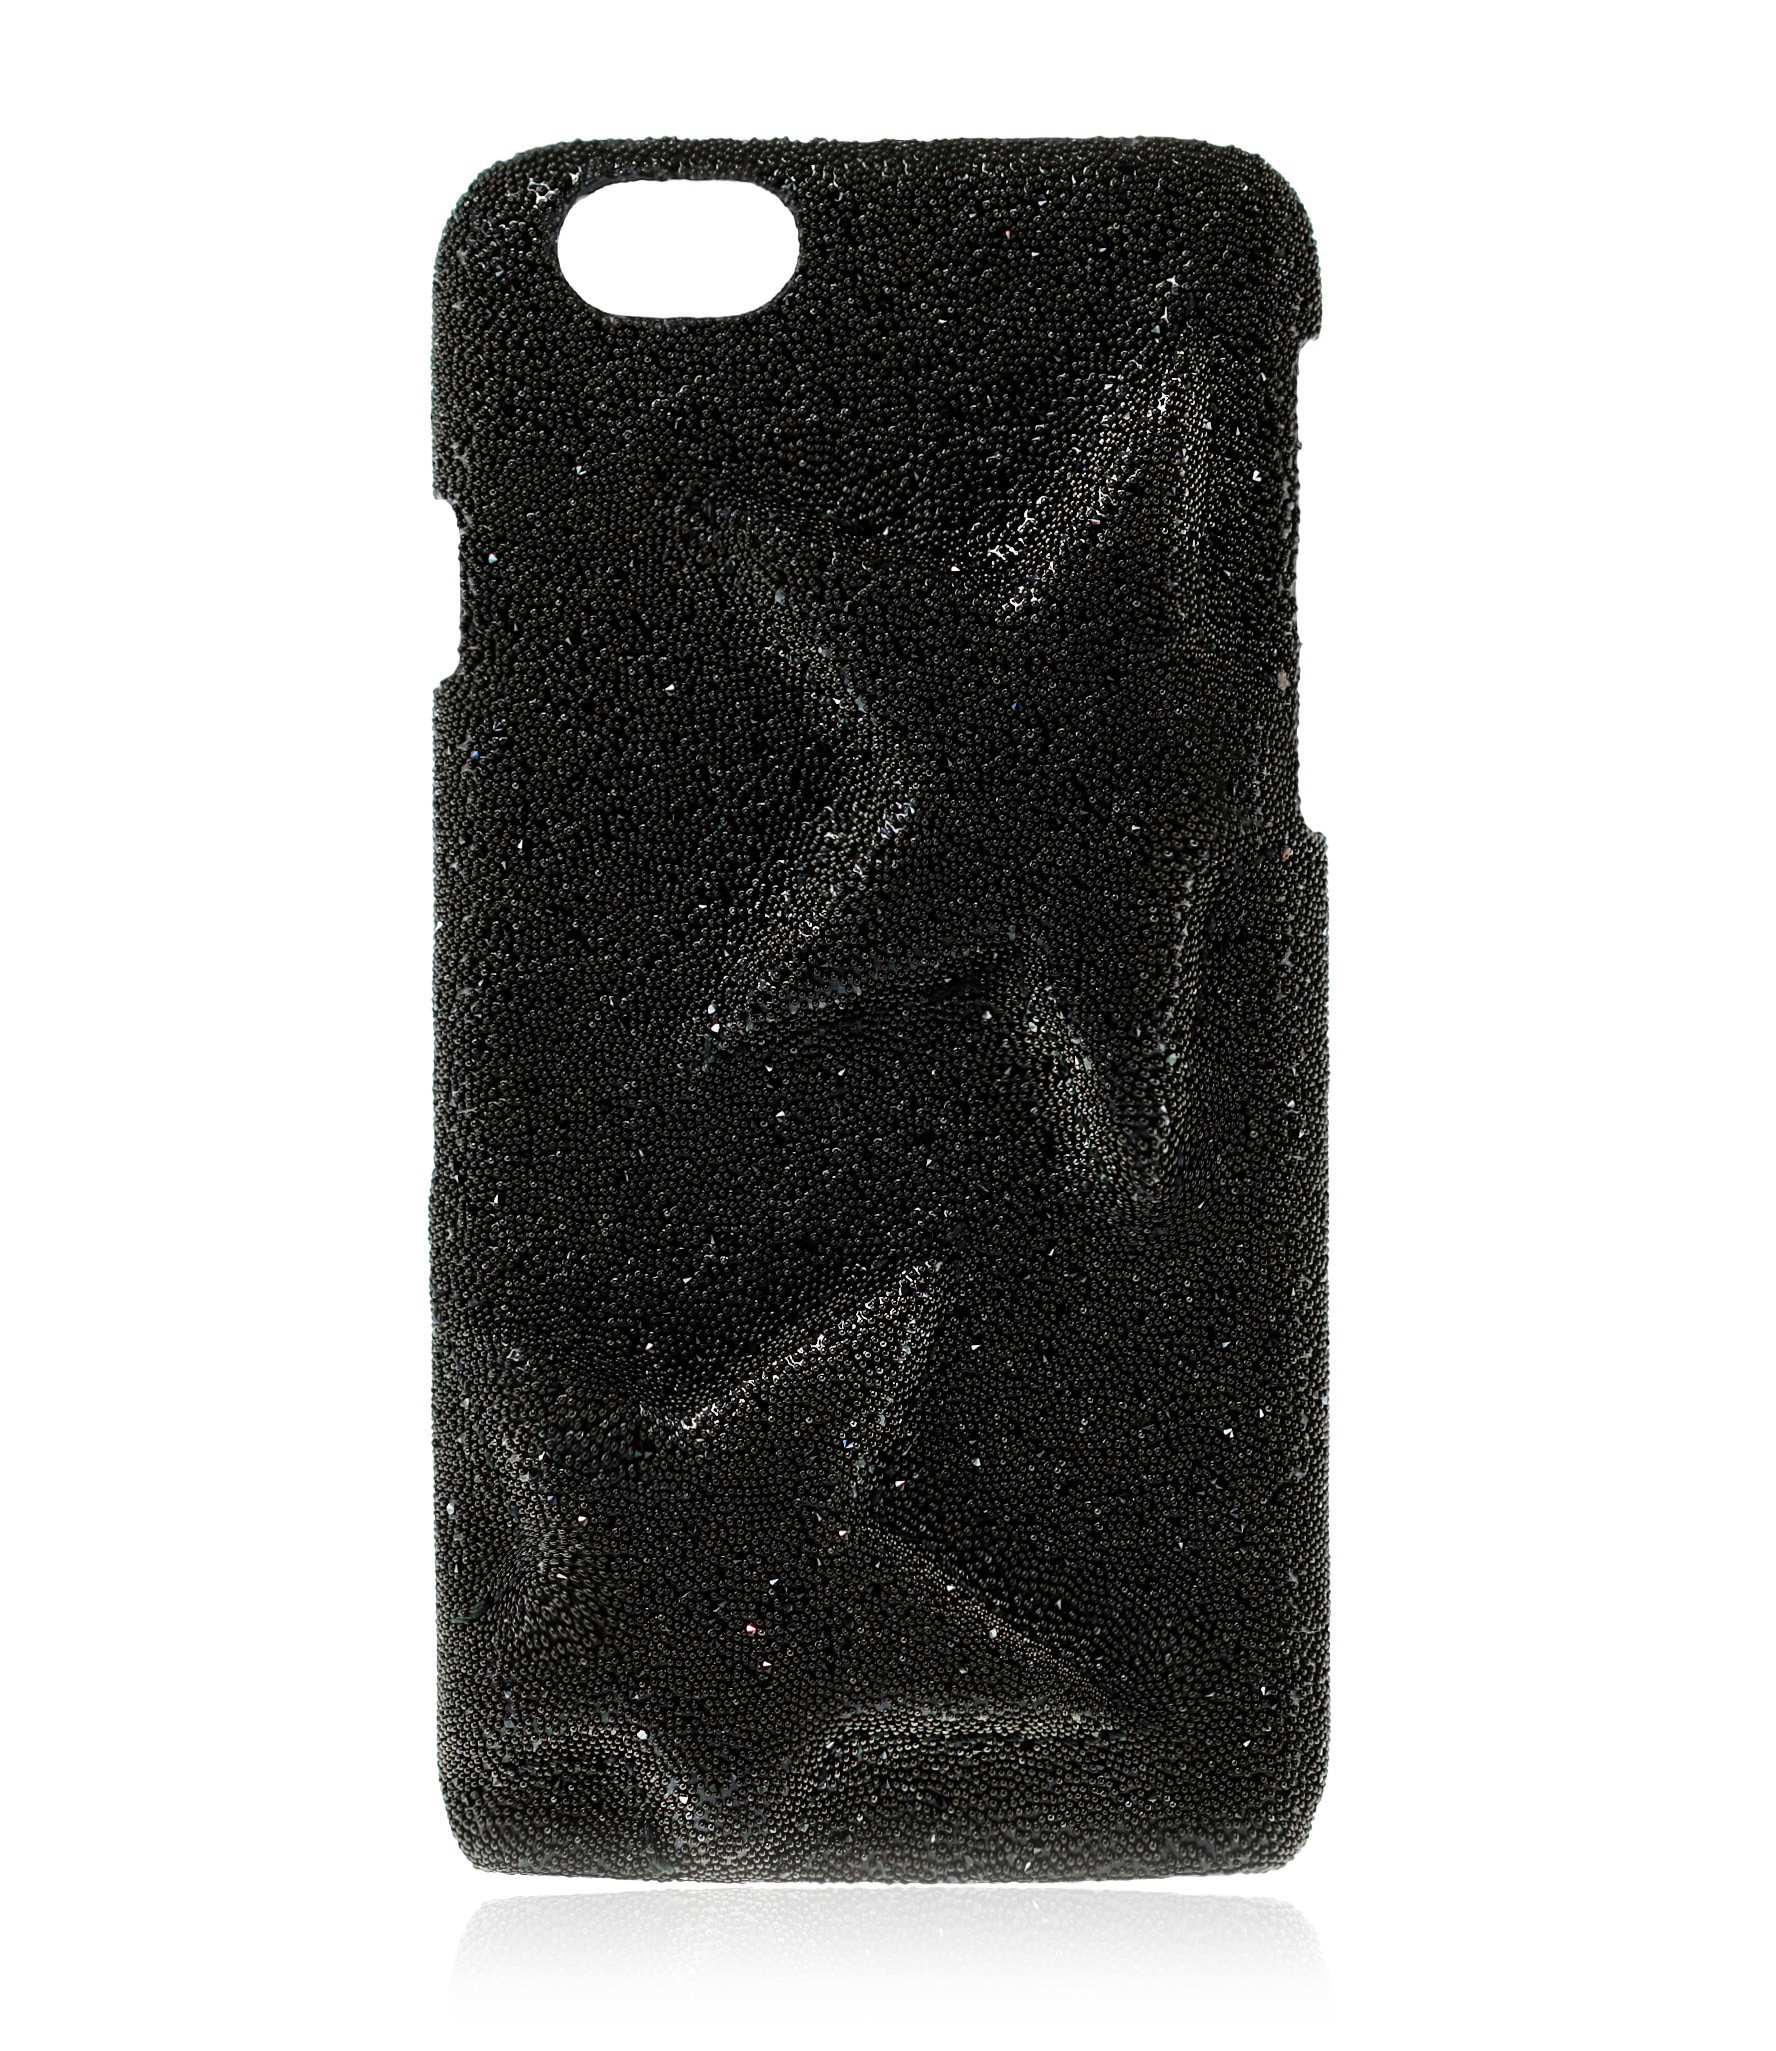 weduwnaar Vreemdeling Aanbevolen 2 ME Style - Case Rebel Crystal Fabric Black Star - iPhone 8 Plus / 7 Plus  - Crystal Cover - Avvenice